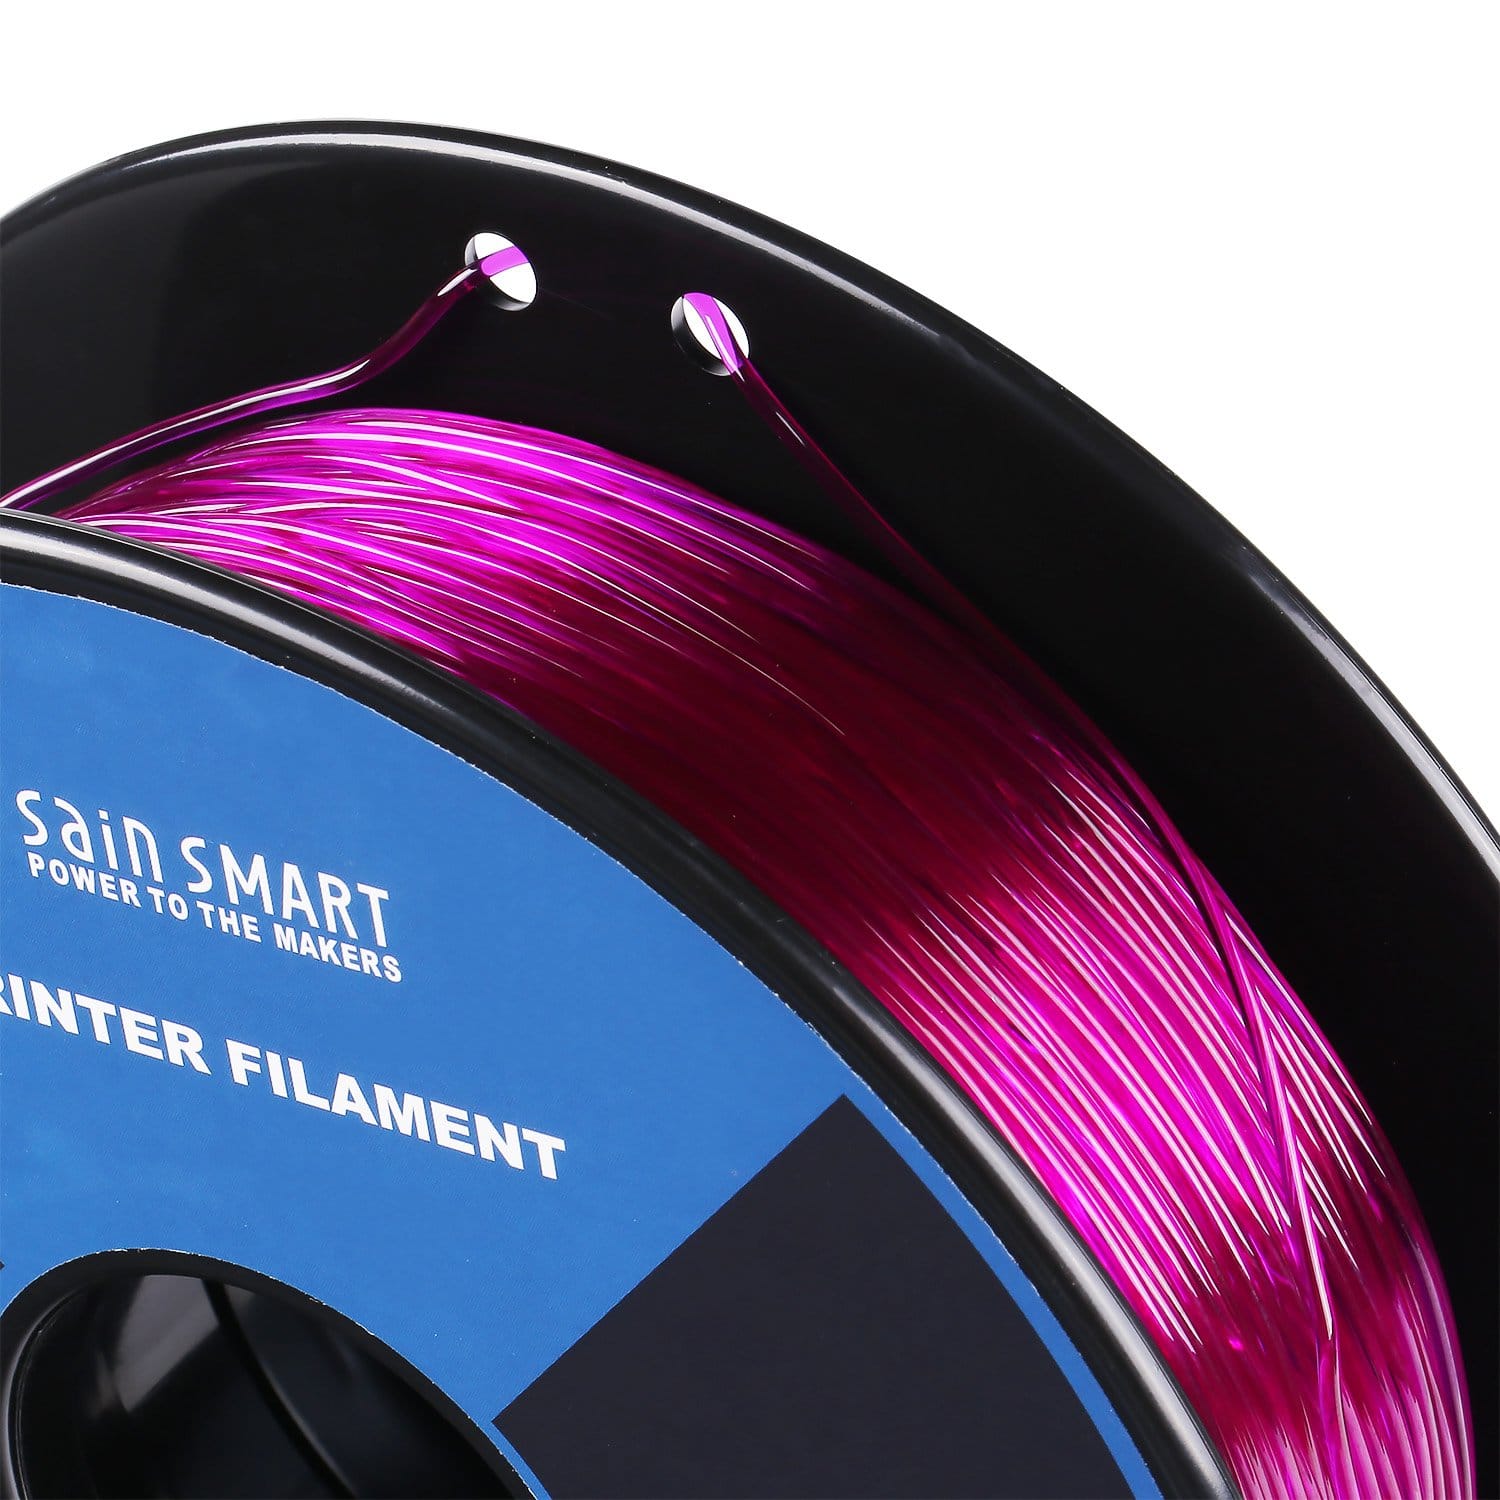 Magenta néon SainSmart Filament en TPU flexible pour imprimante 3D Rouge violet 1,75 mm 800 g Précision dimensionnelle +/- 0,05 mm 